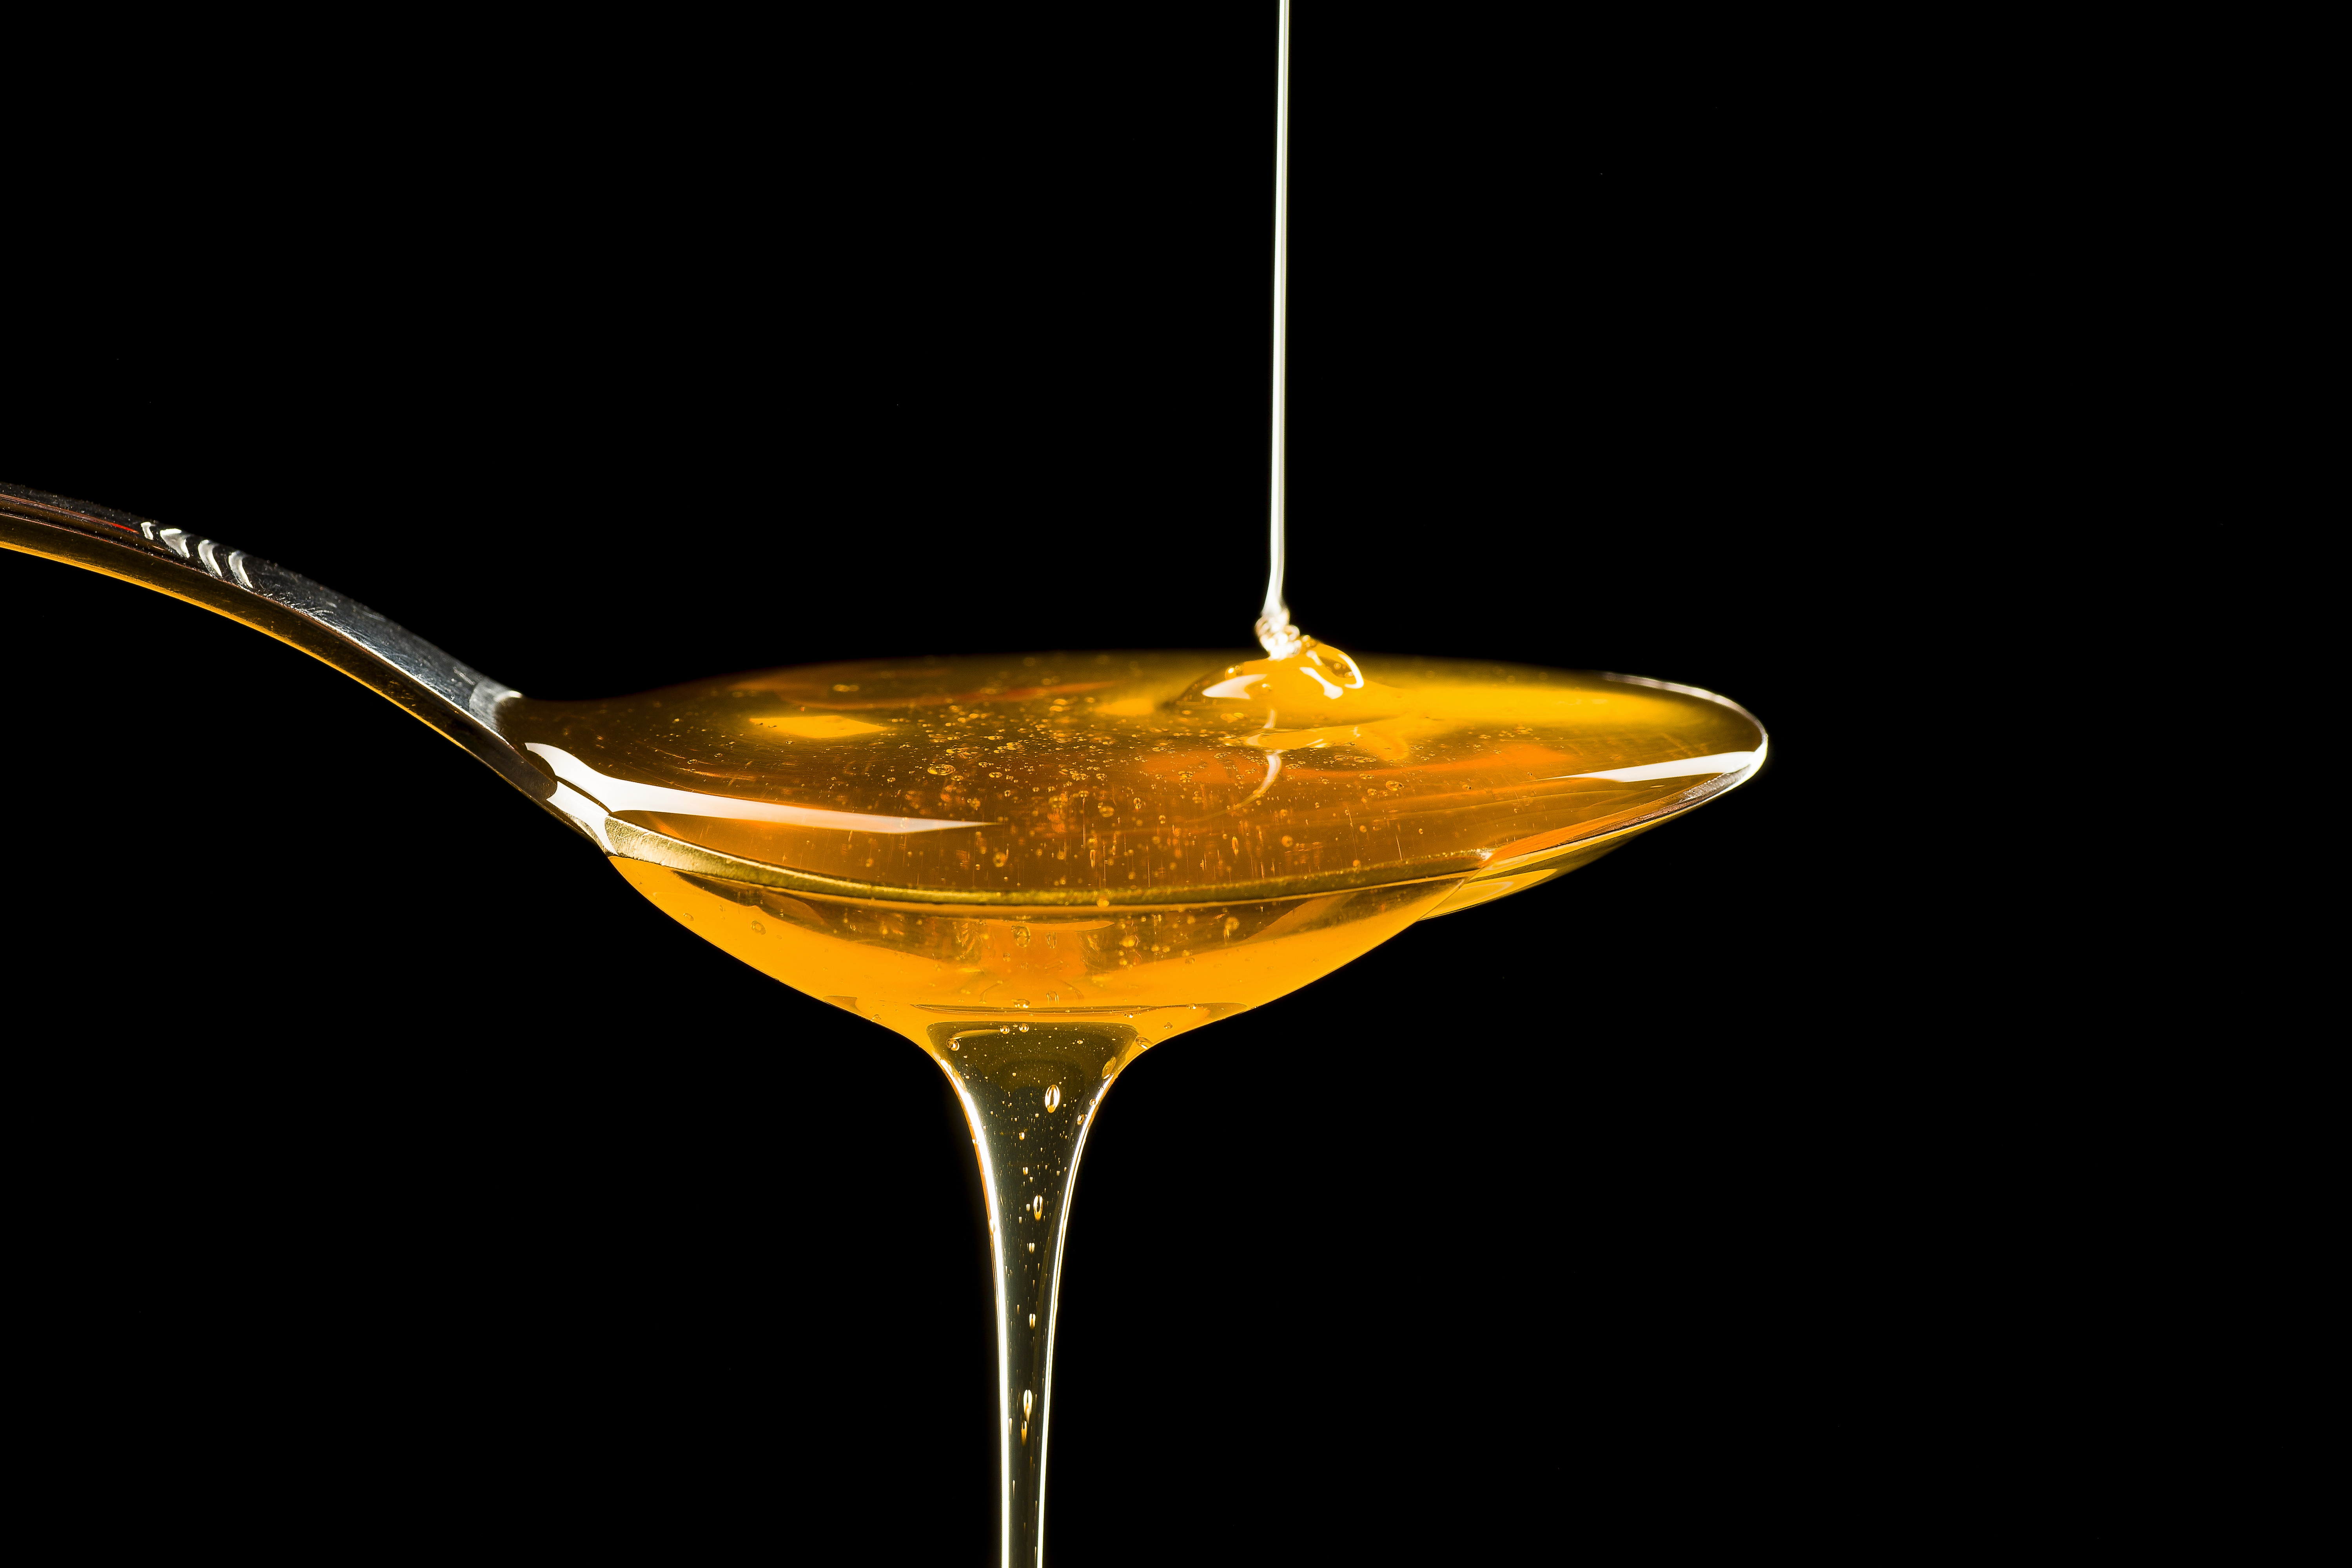 Vendu comme aphrodisiaque, un miel classé dangereux pour la santé